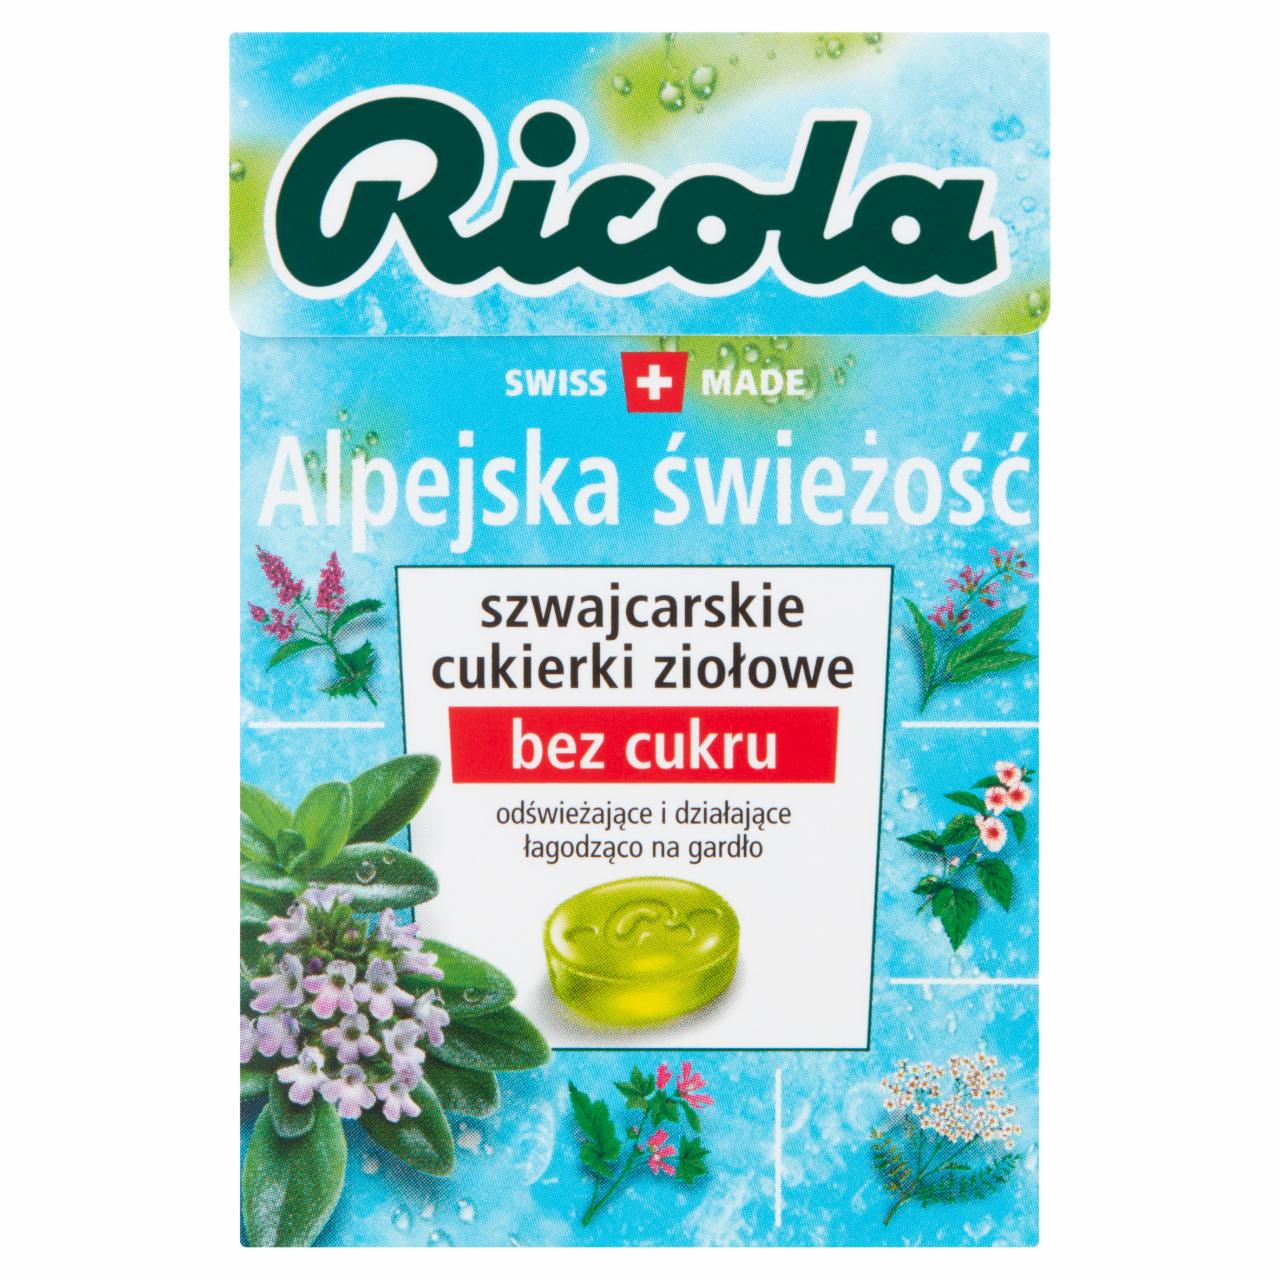 Zdjęcia - Ricola Szwajcarskie cukierki ziołowe alpejska świeżość 27,5 g